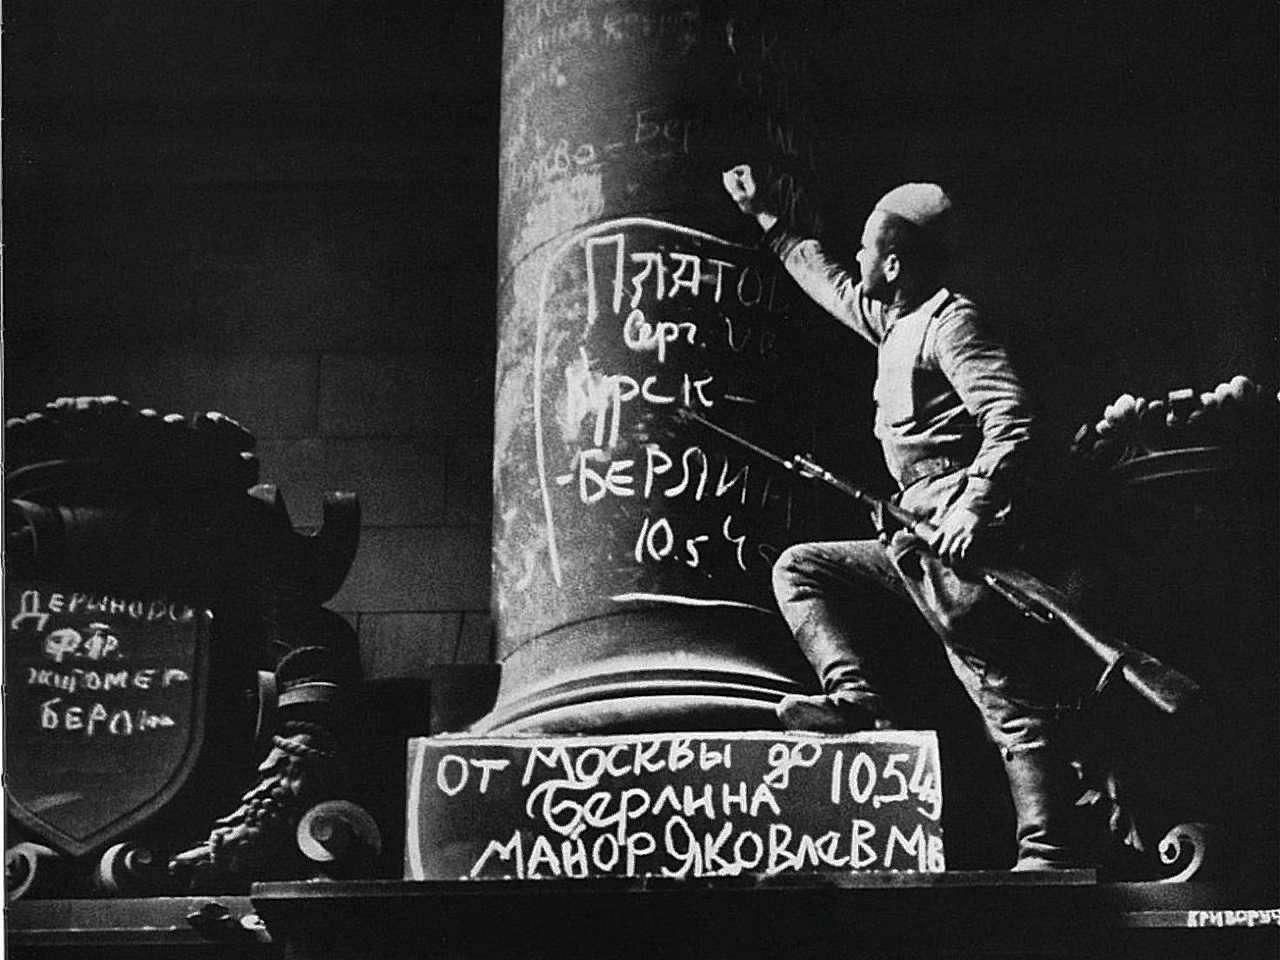 Росписи солдат Рейхстаг 1945